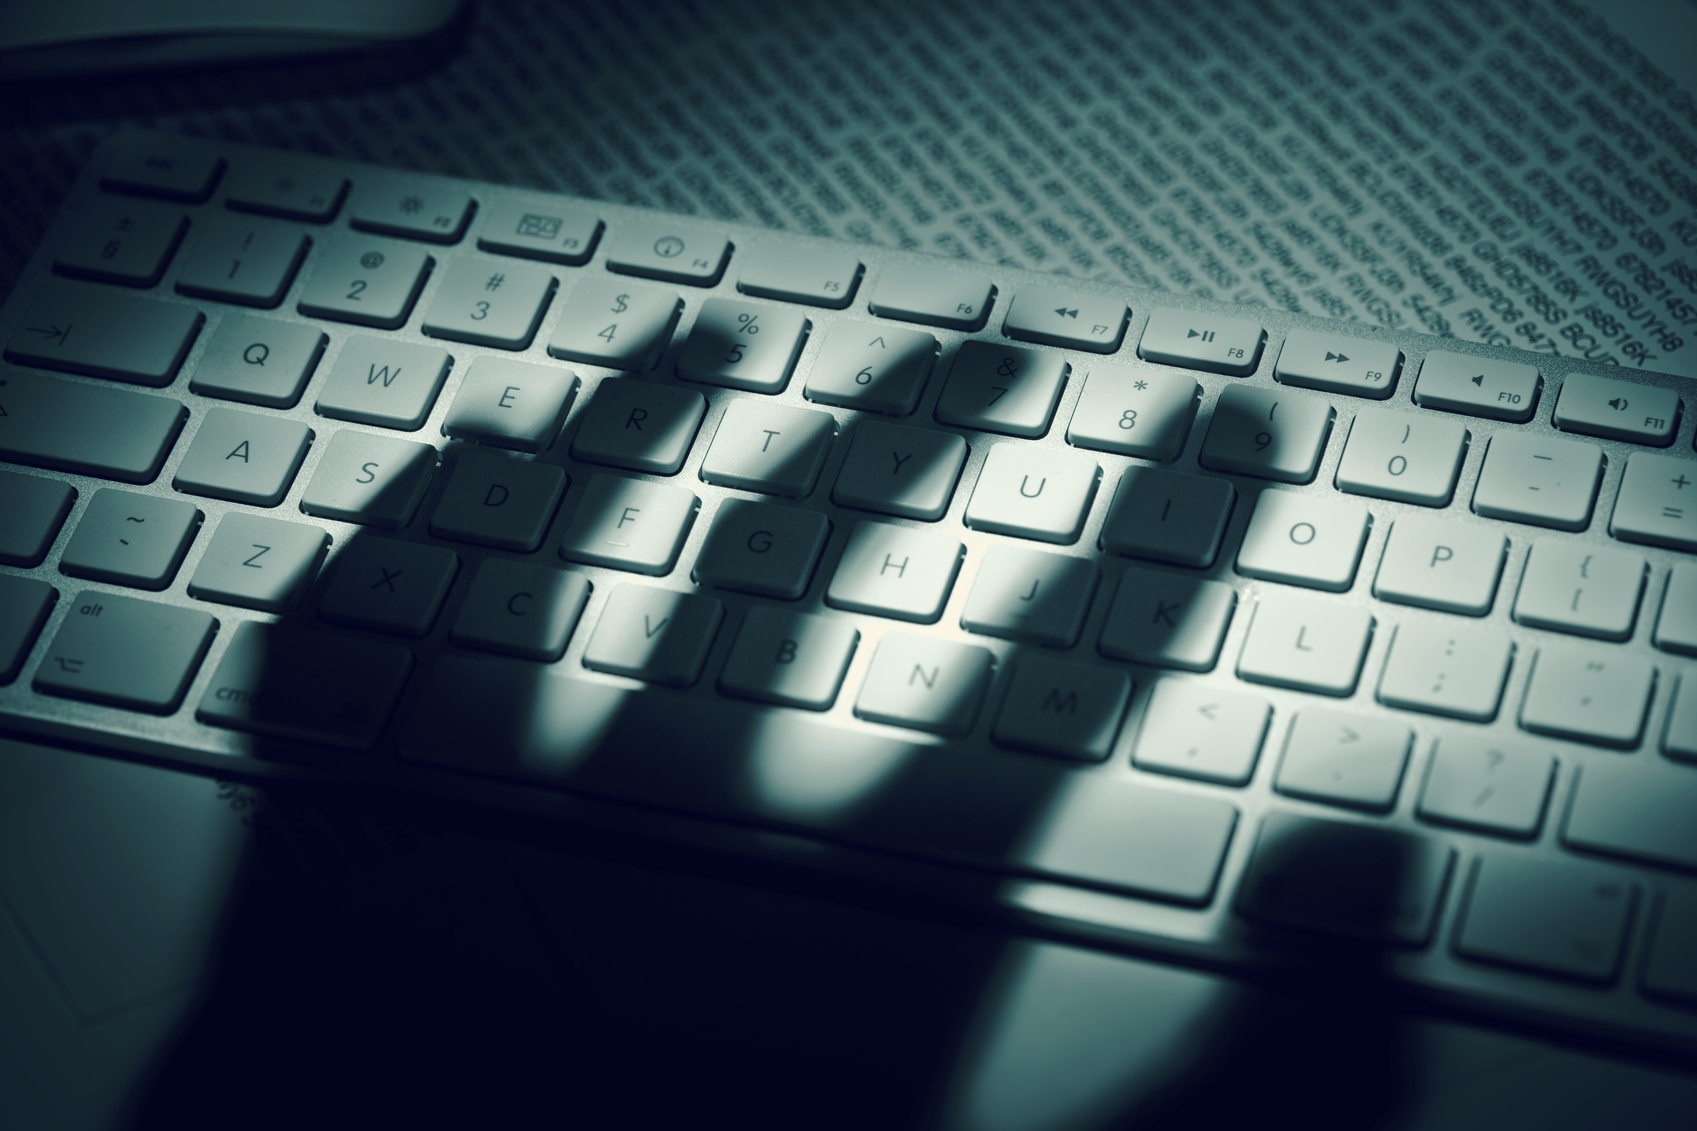 A menacing hand's shadow on a computer keyboard in front of printed computer data. Dramatic light, high contrast.